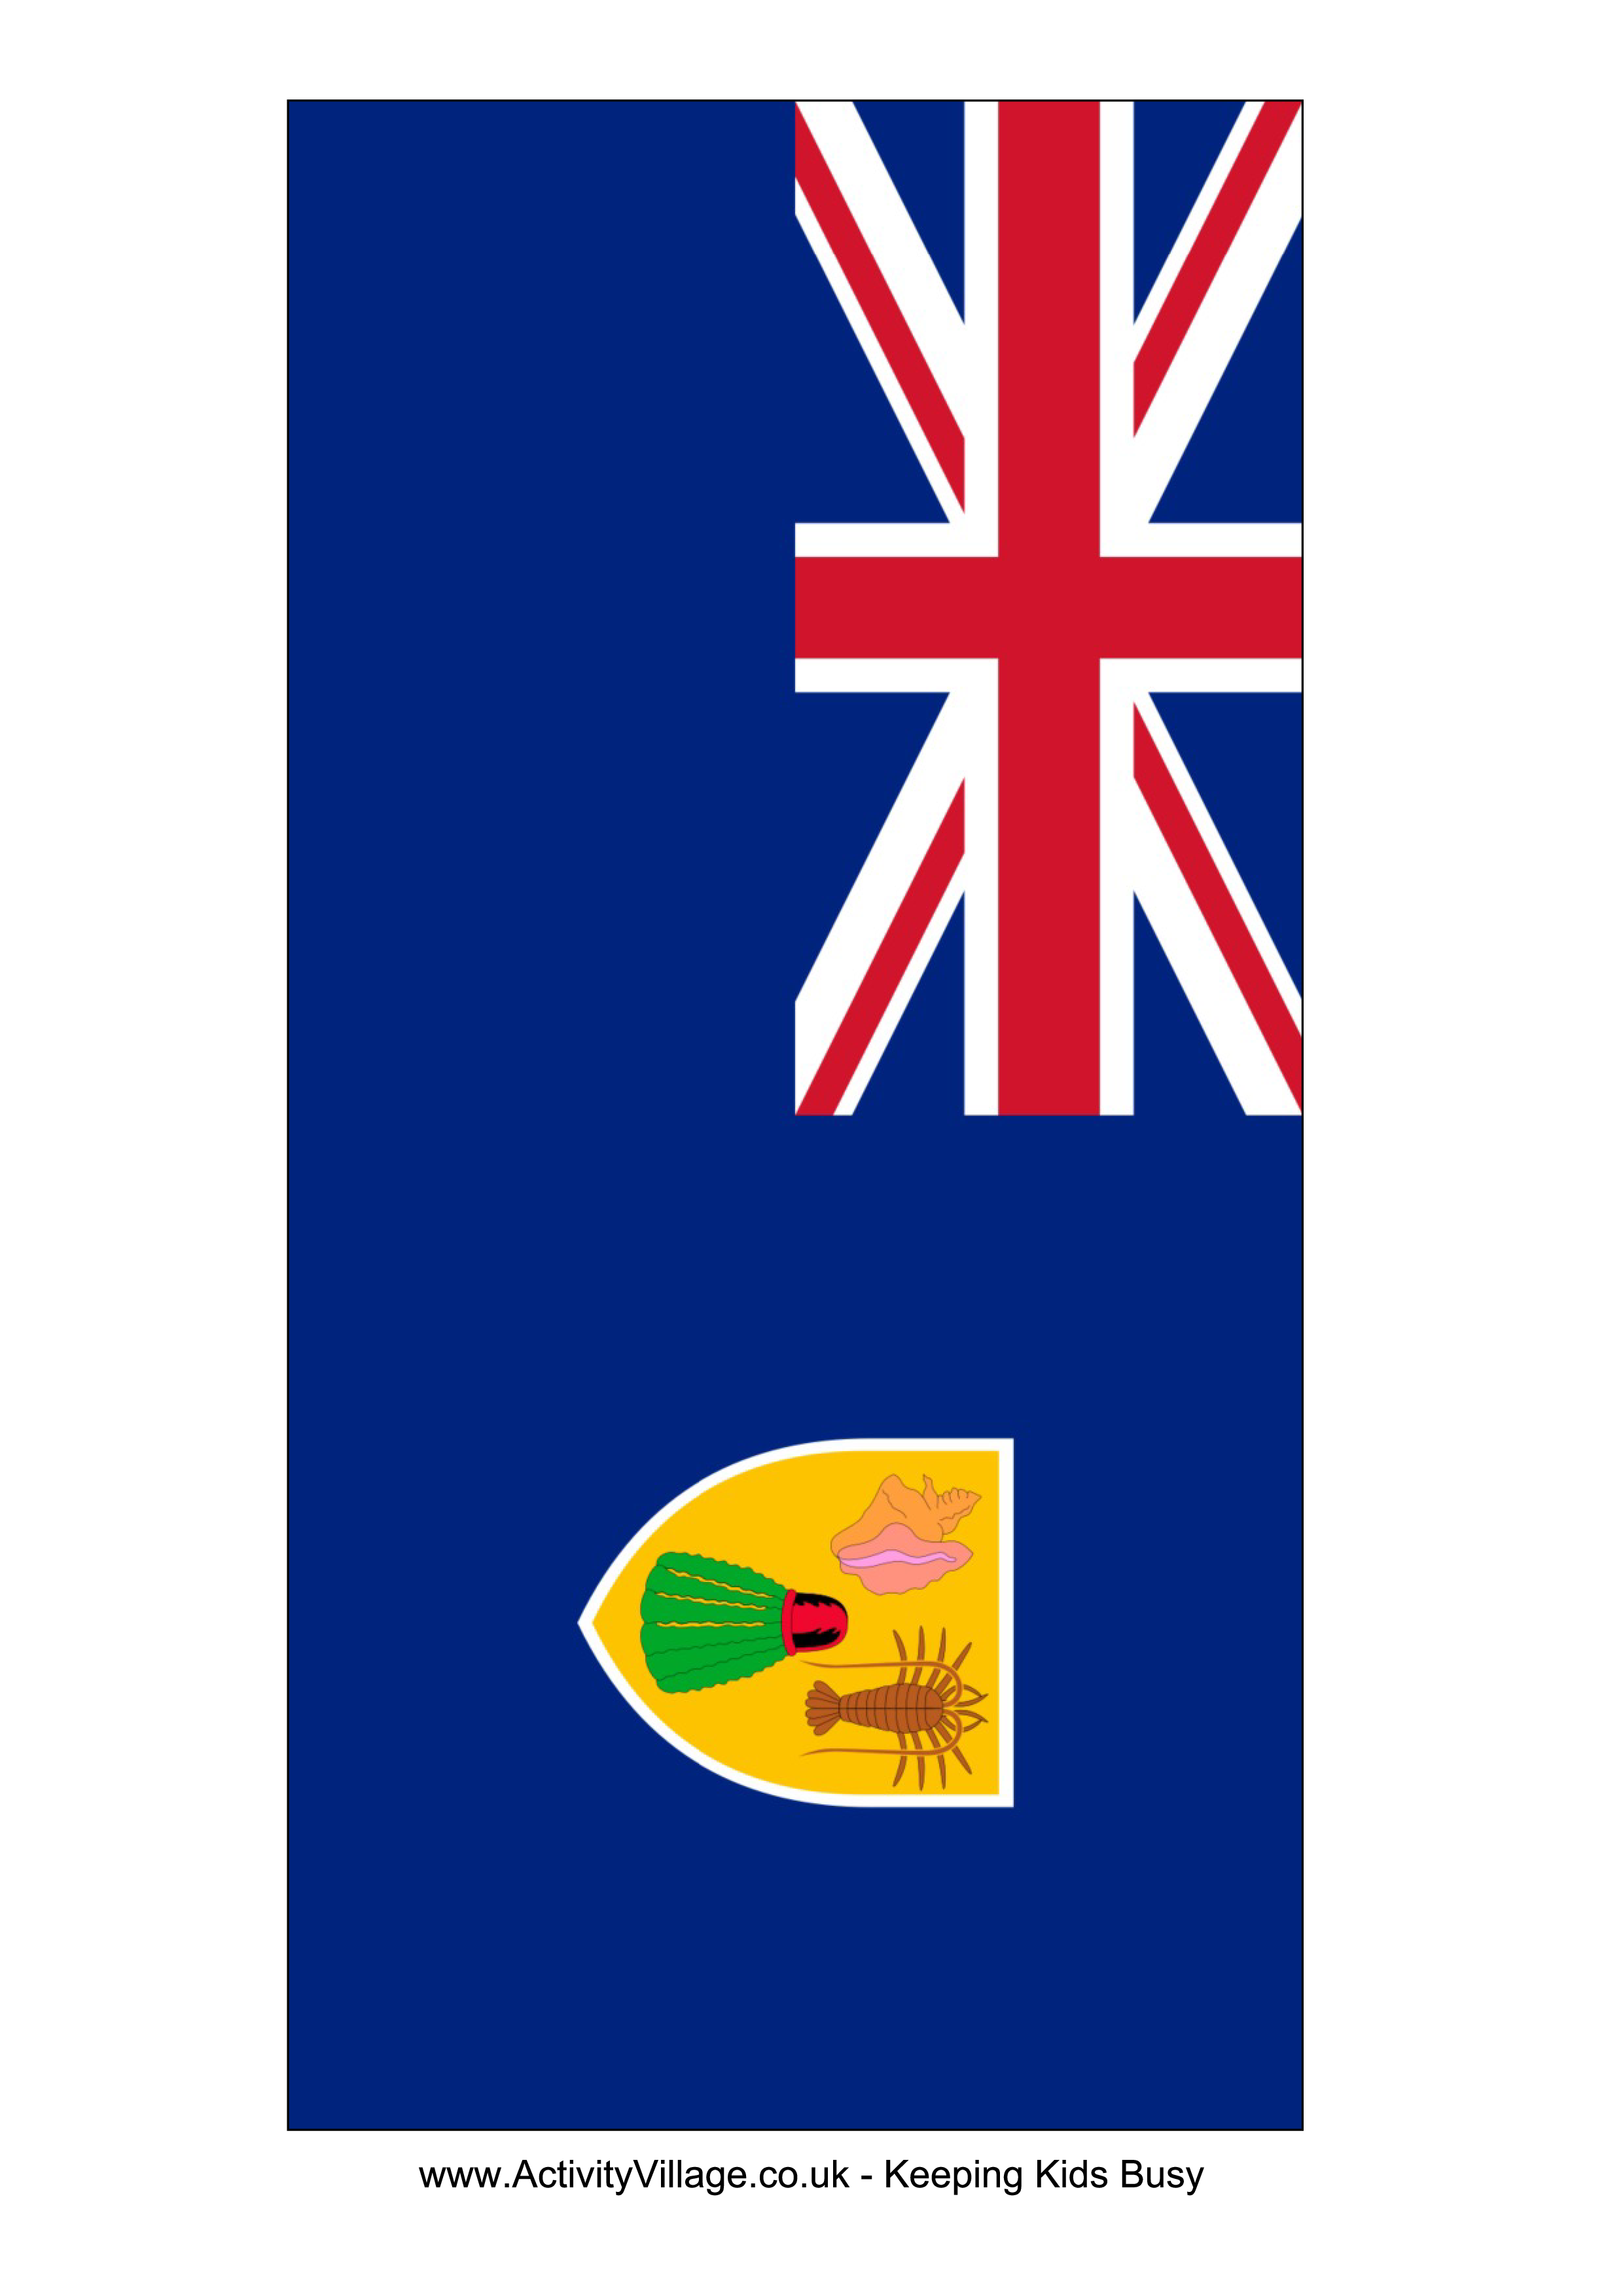 turks and caicos islands flag plantilla imagen principal